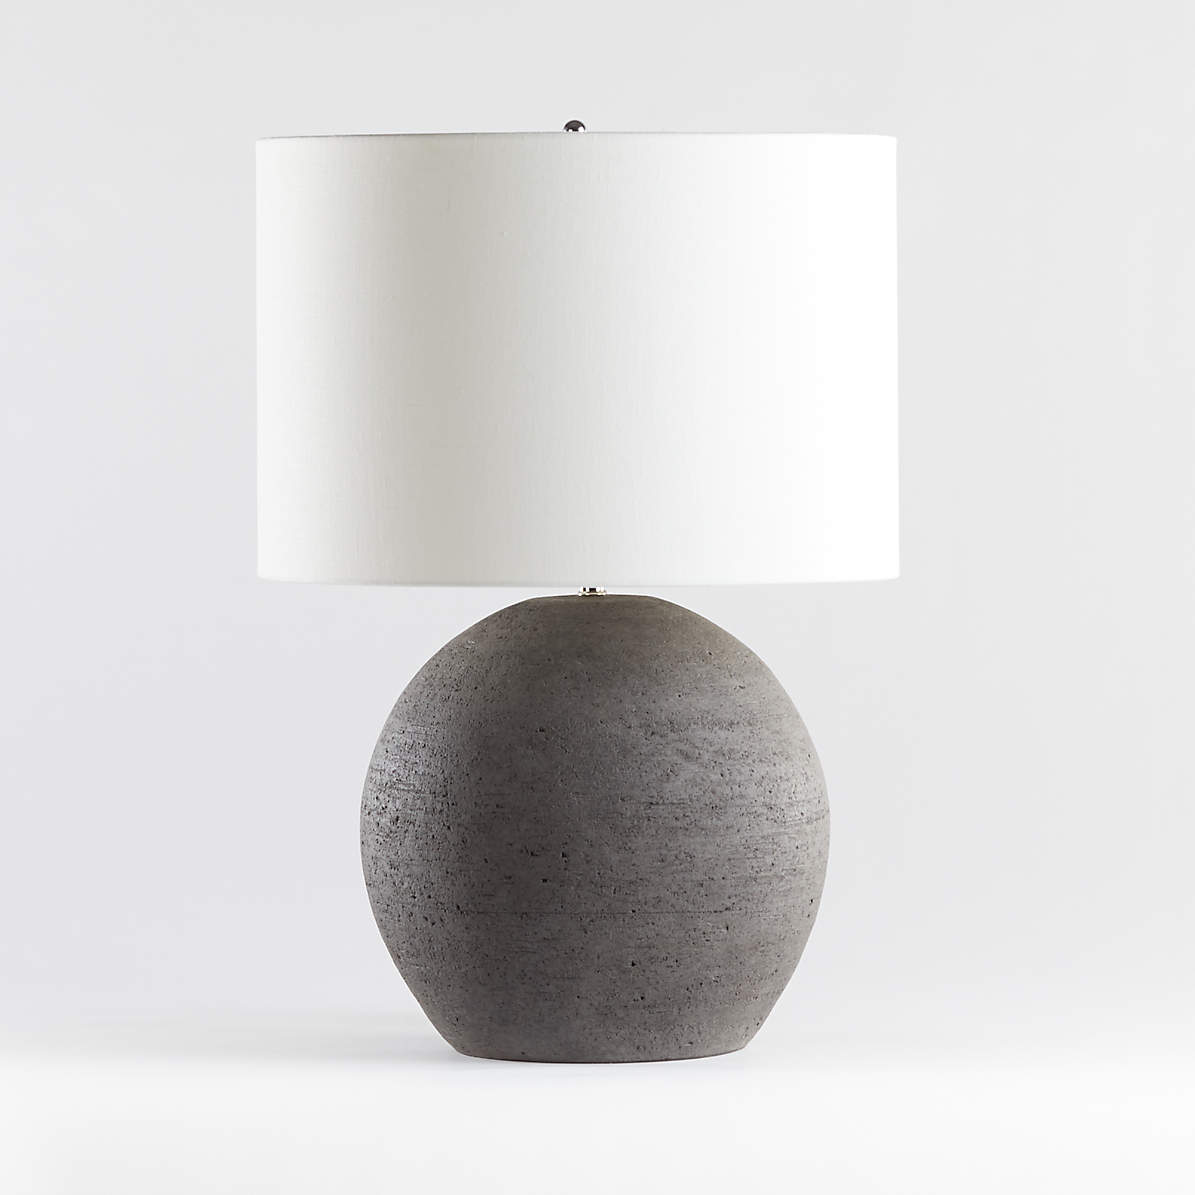 sphere table lamp